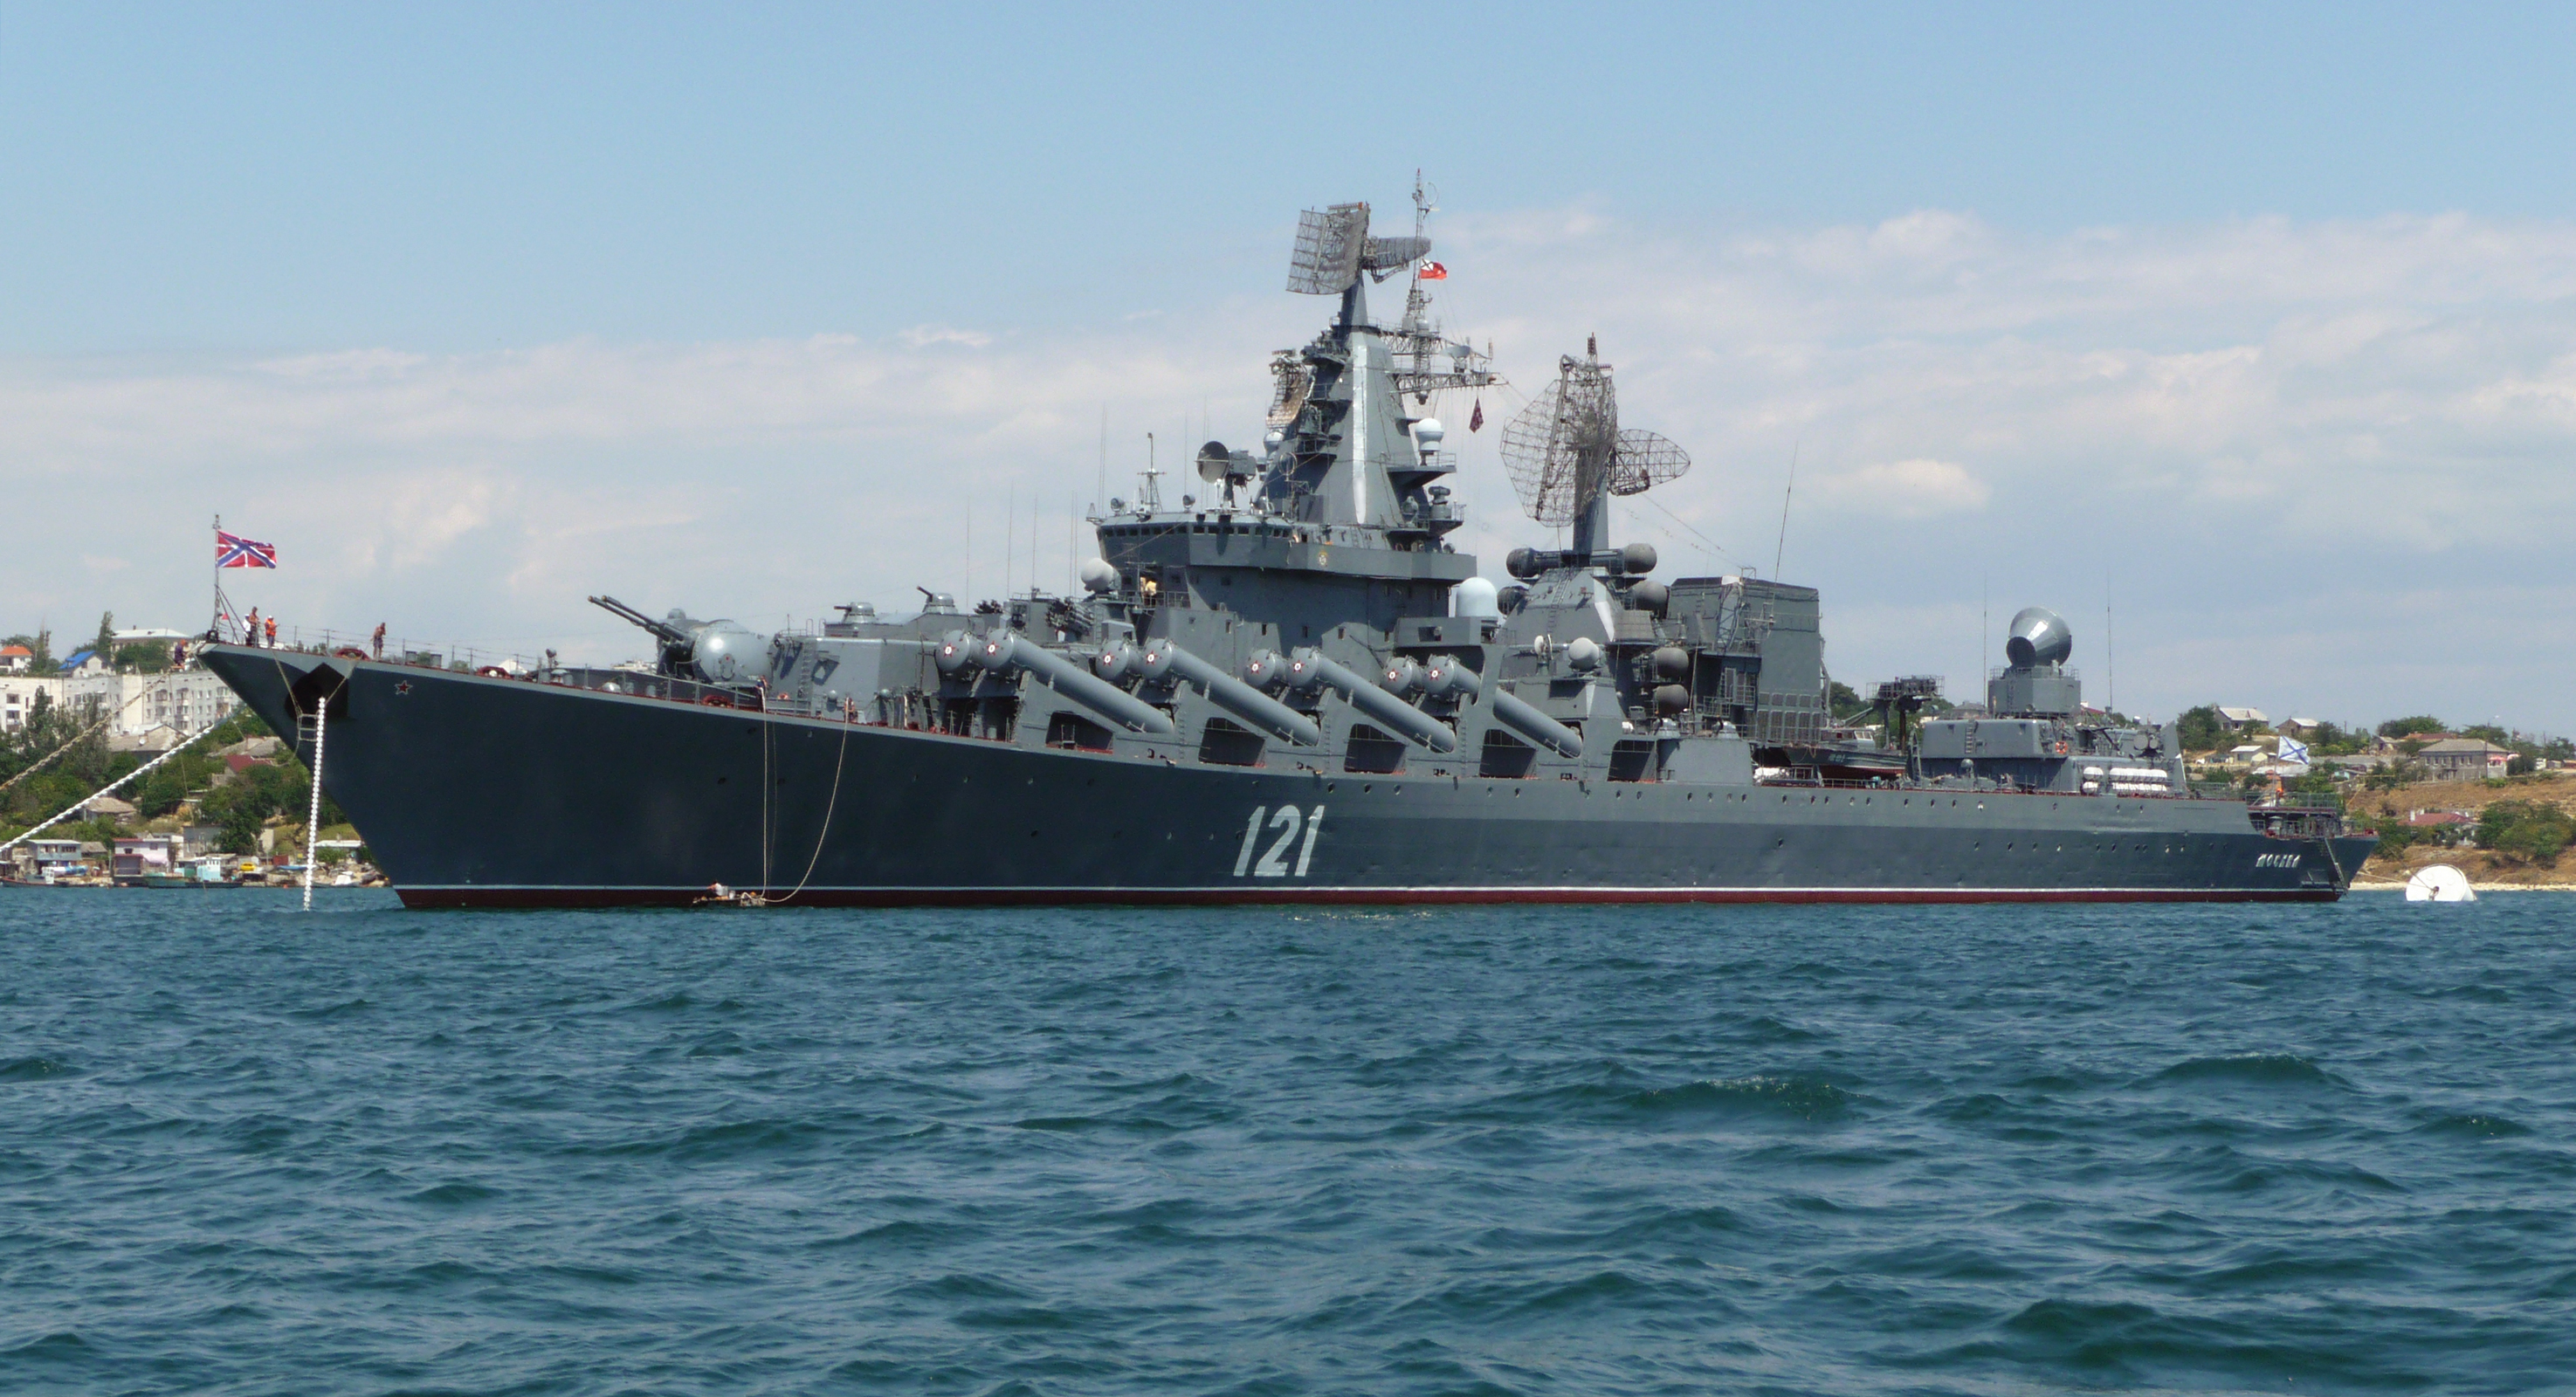 Tuần dương hạm tên lửa Moskva là một trong những chiến hạm có khả năng phòng không hiện đại nhất, mạnh nhất Hải quân Nga hiện tại.